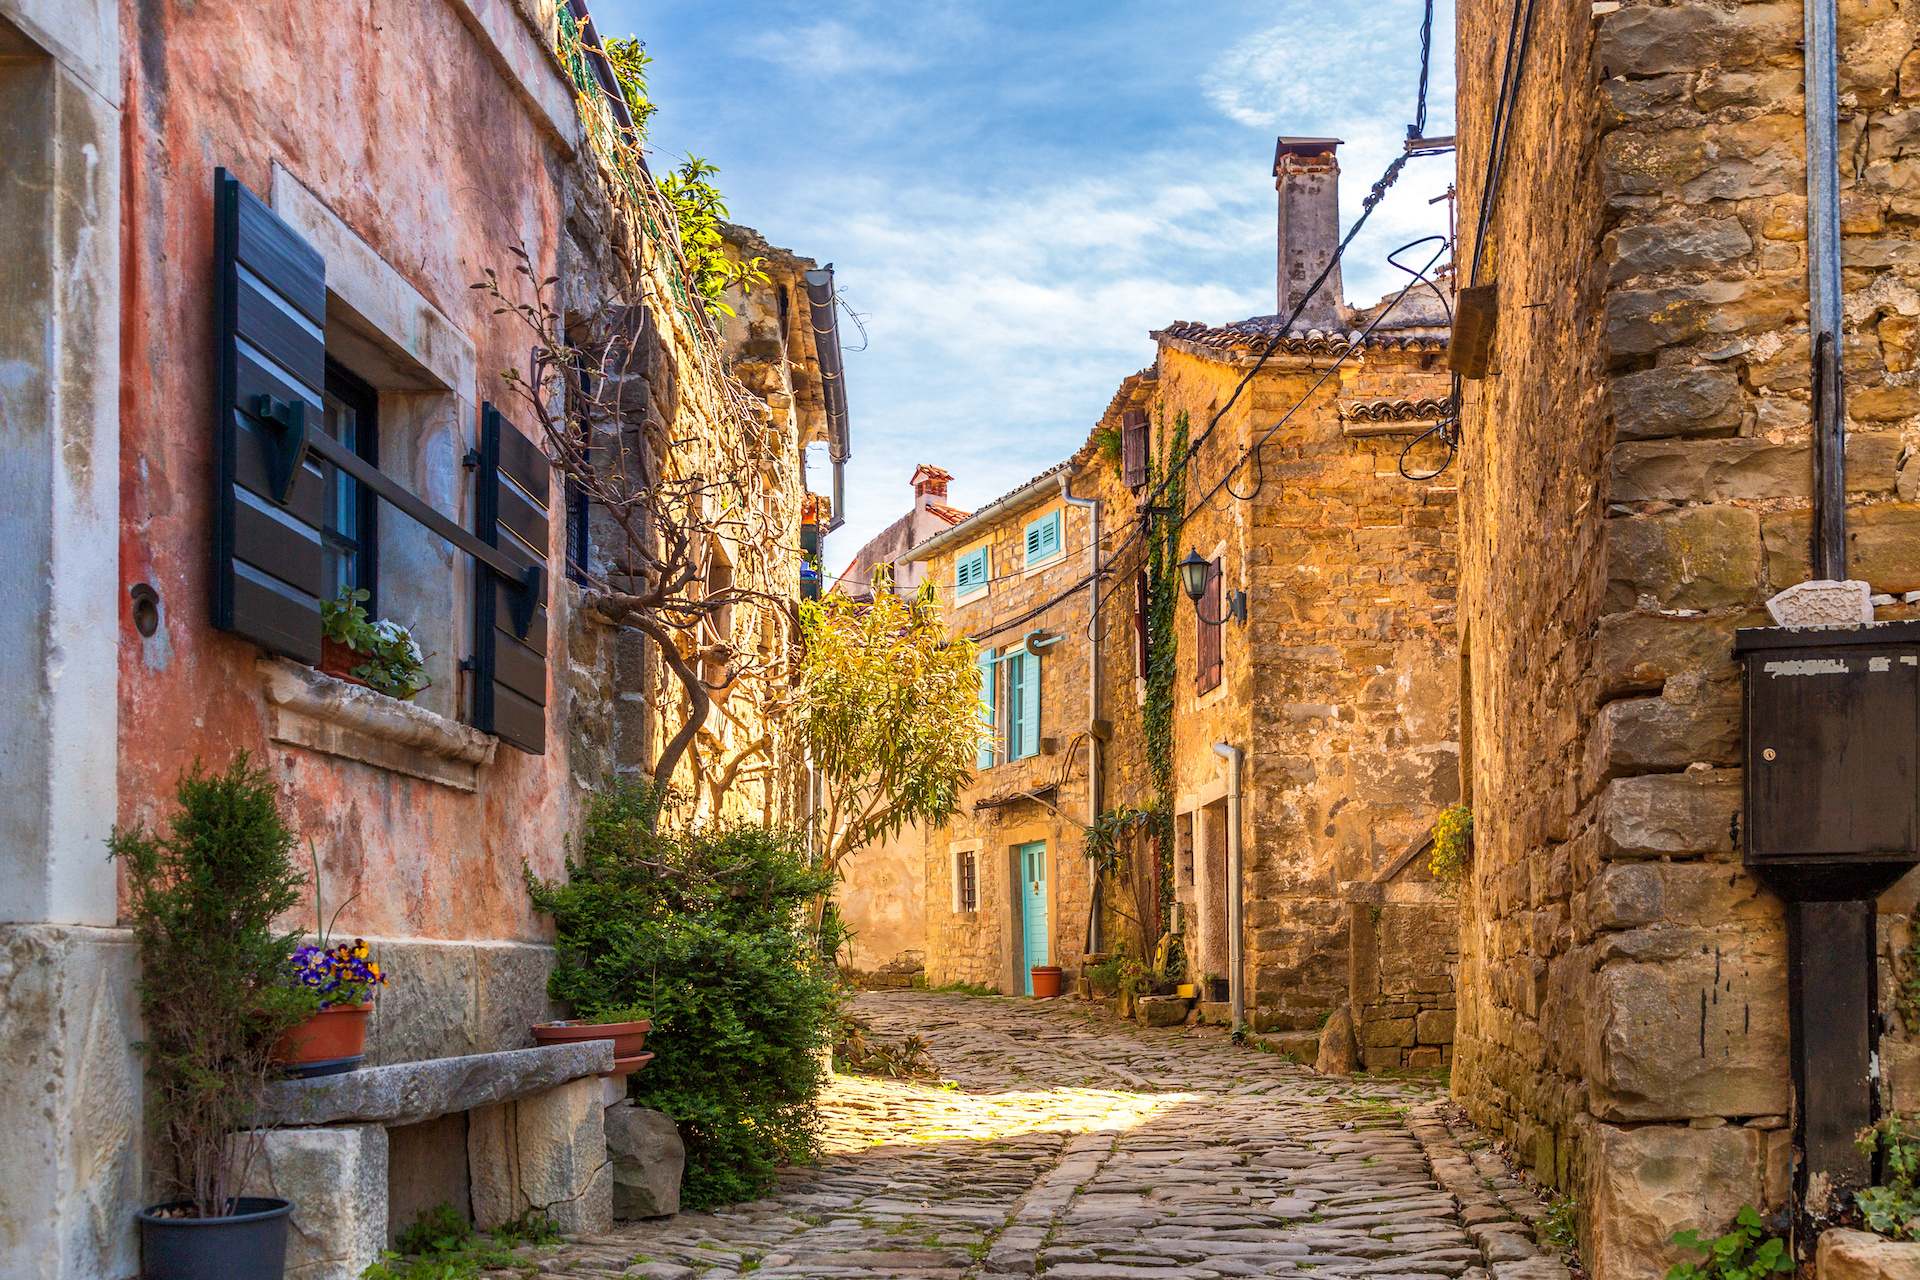 Bunte Häuser aus Stein prägen das Ortsbild von Motovun